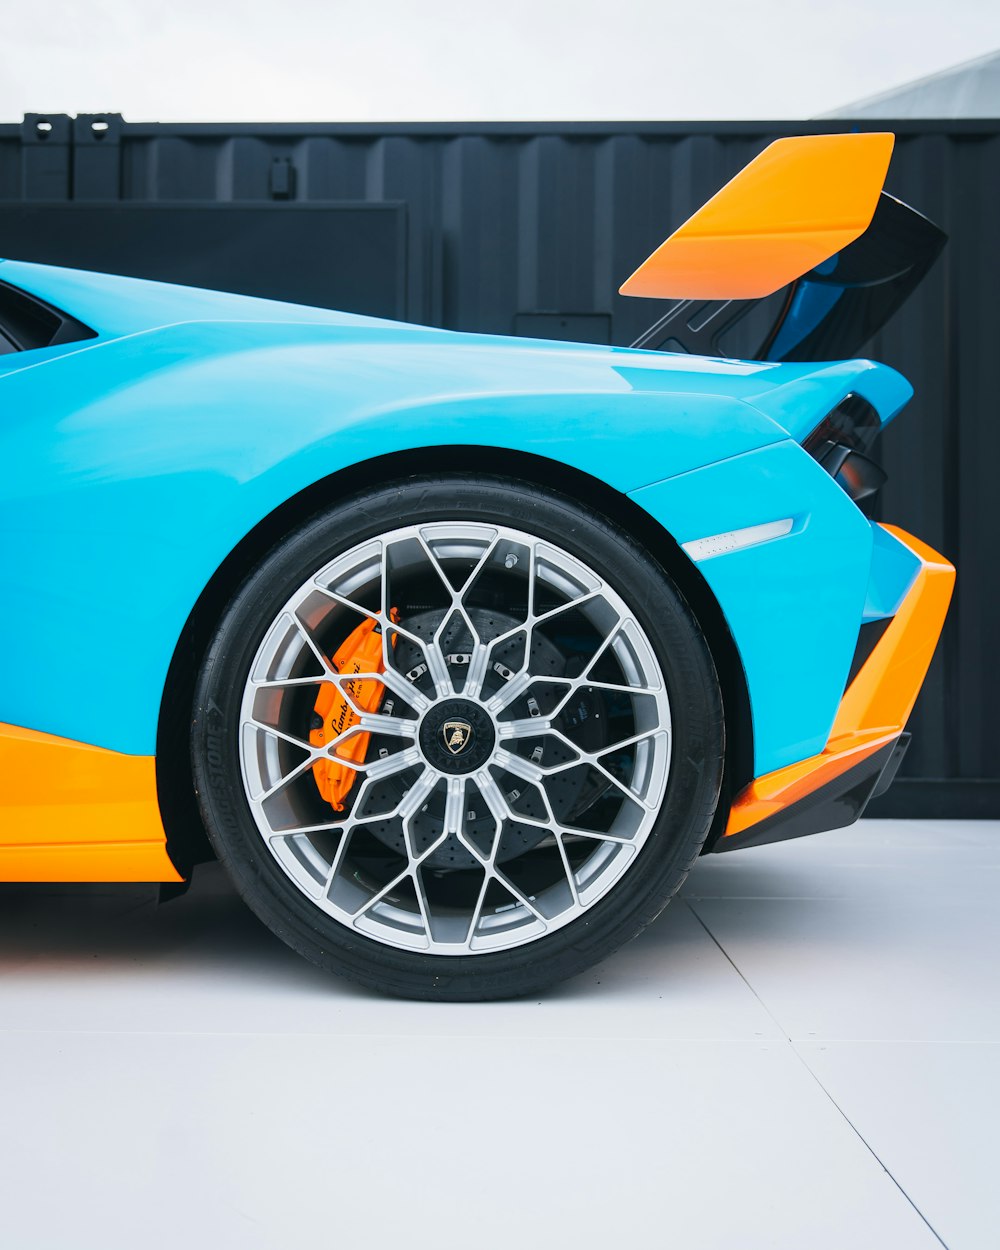 Un coche deportivo azul y naranja aparcado en un garaje